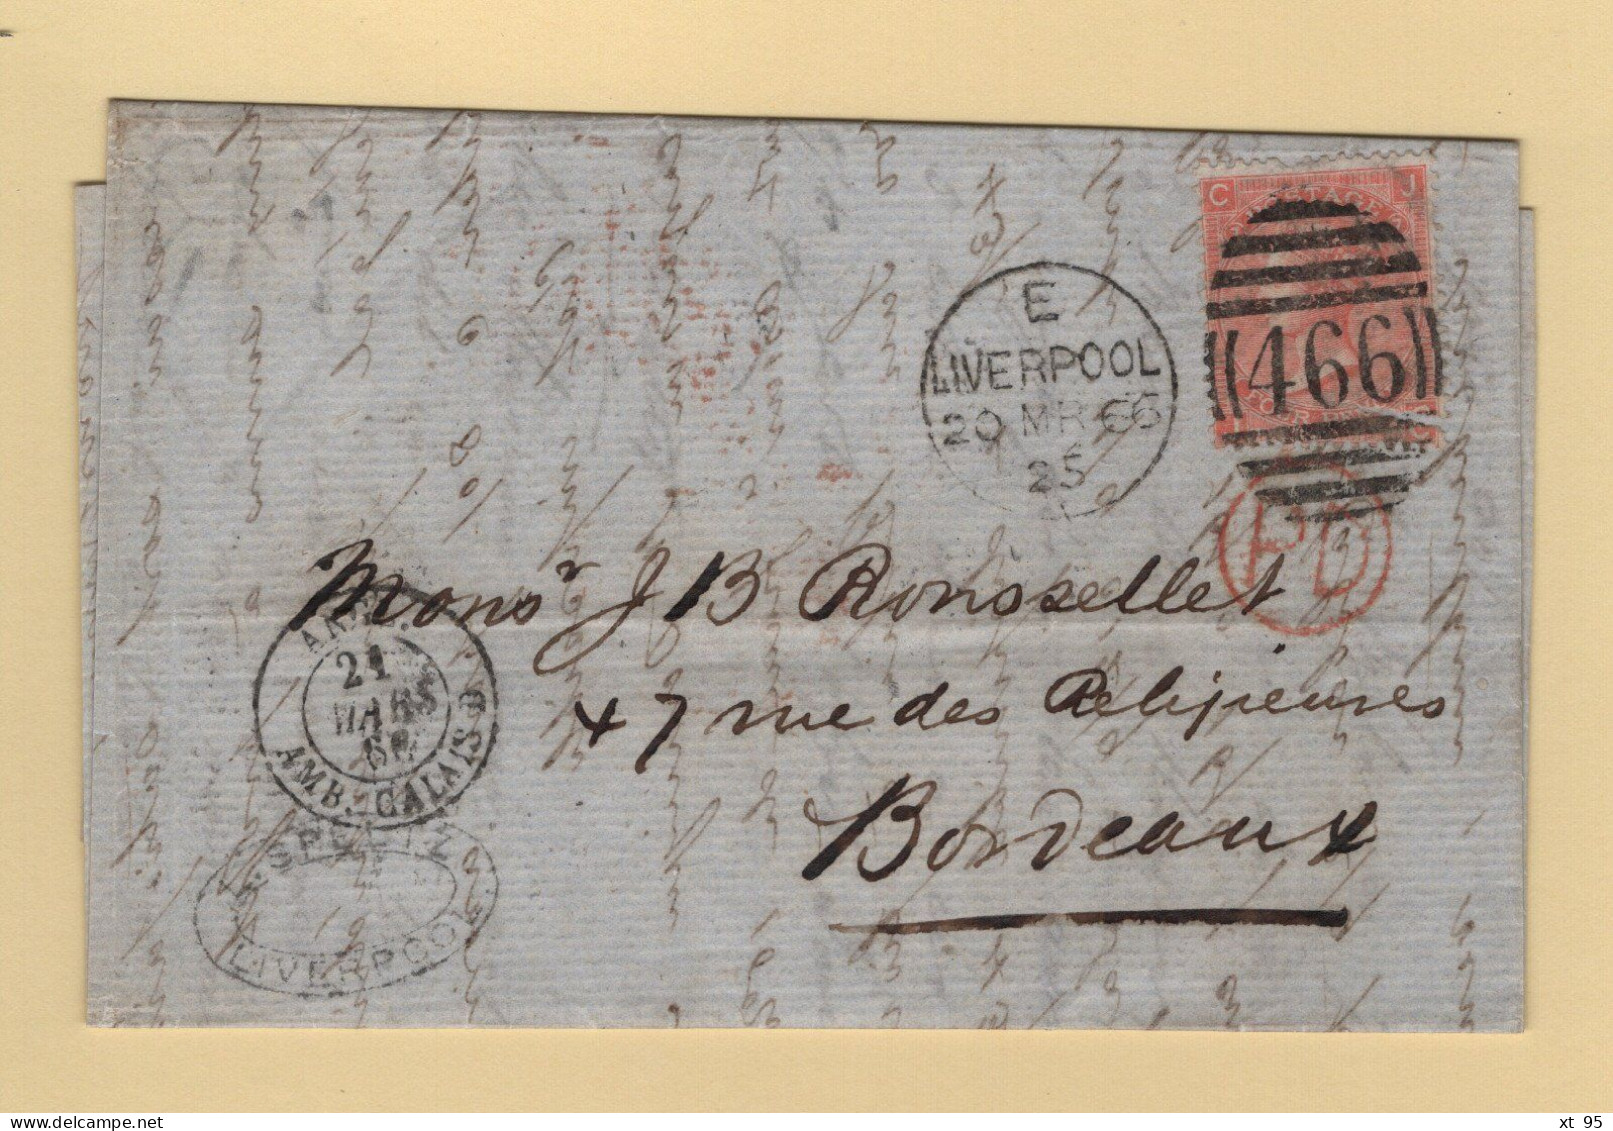 Liverpoool - 466 - 1866 - Destination Bordeaux Entree Par Calais - Covers & Documents